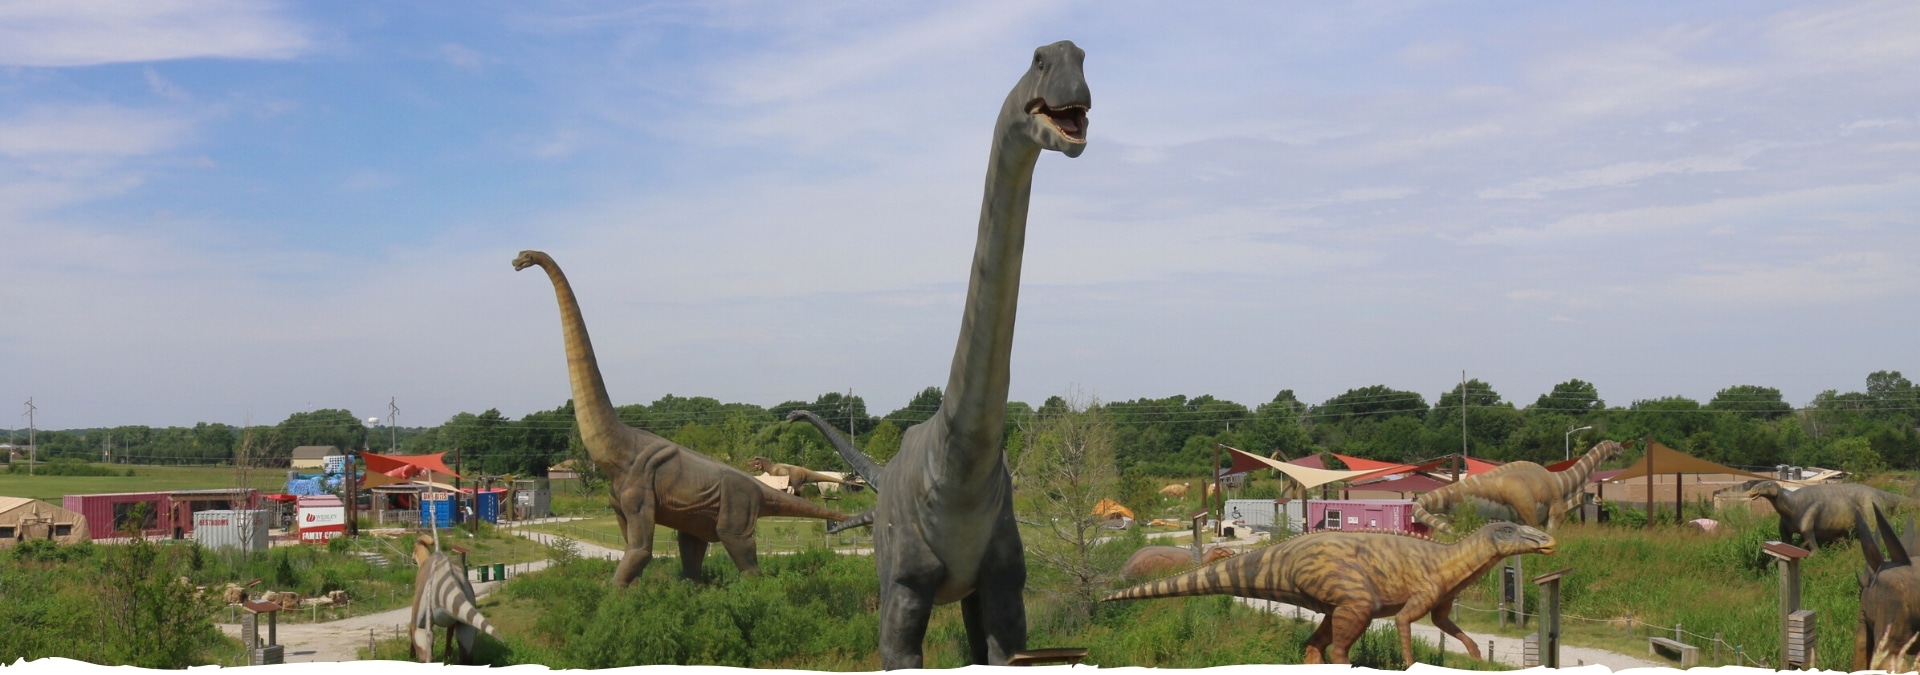 Derby, Kansas Dinosaur Park